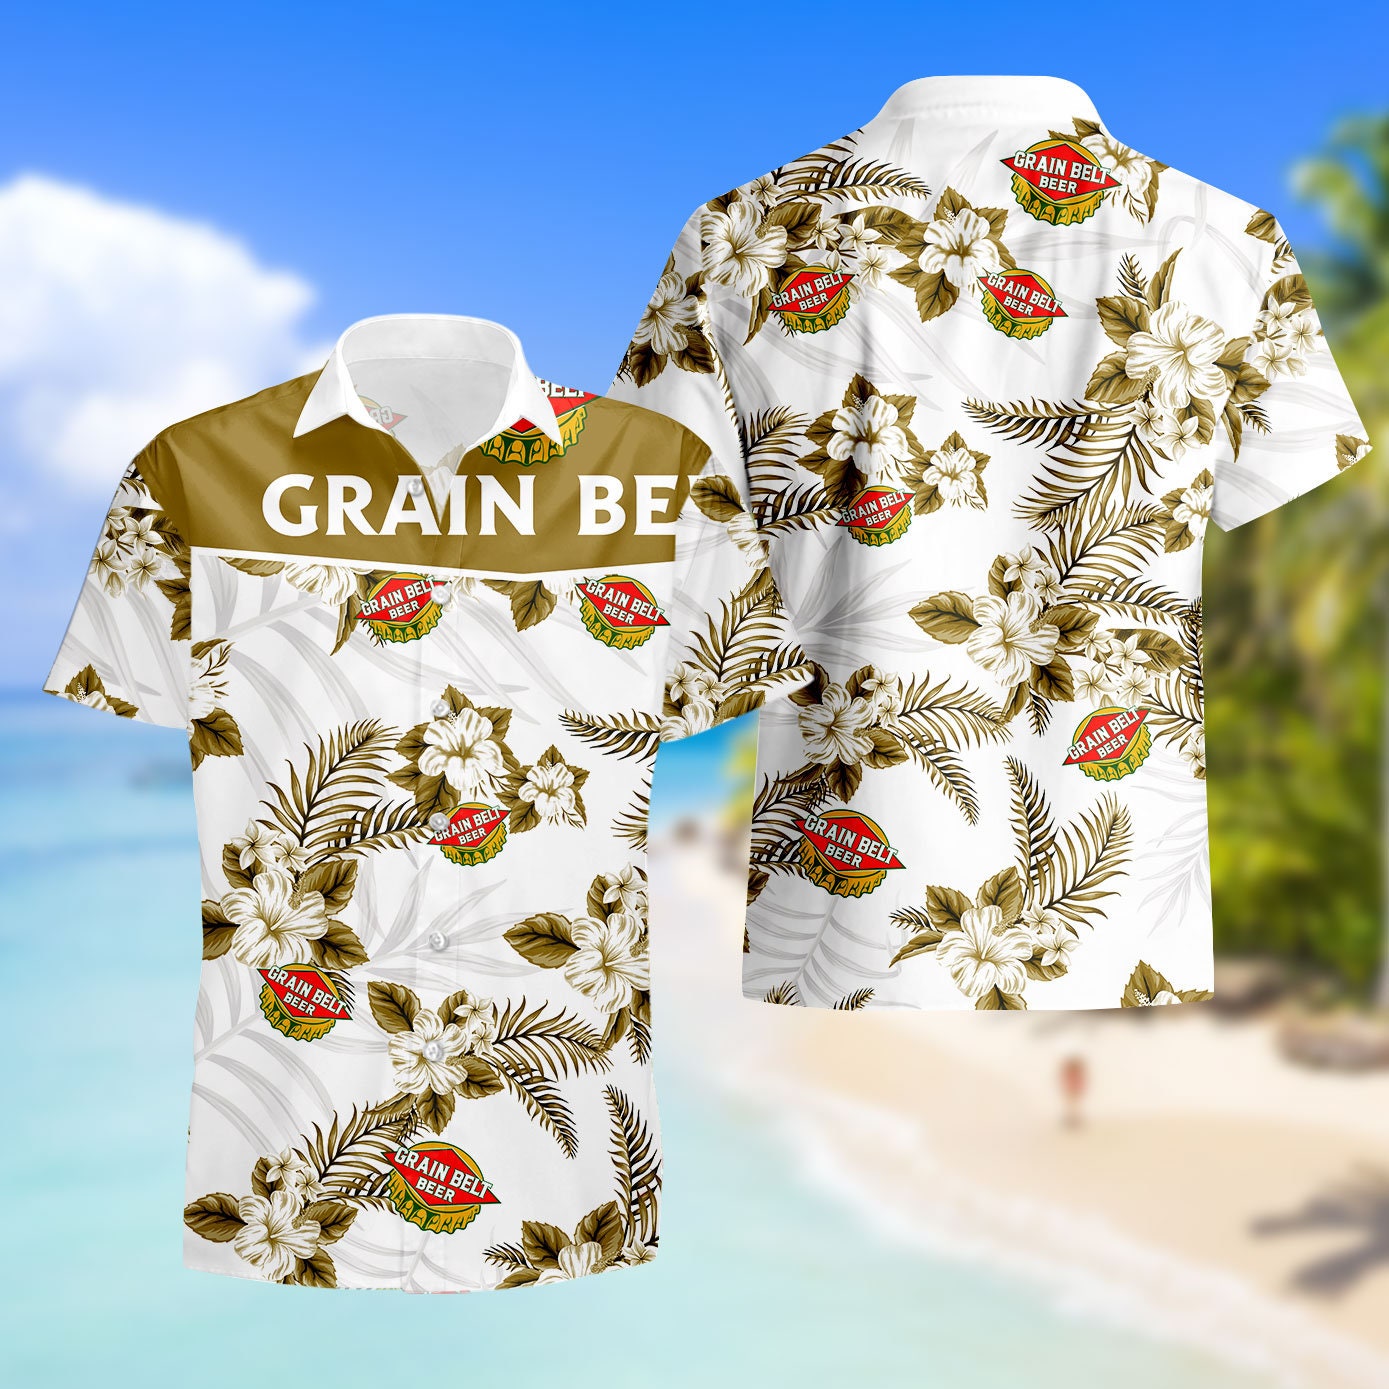 Historic Grain Belt Brewery Hawaiian Shirt, Grain Belt Shirt